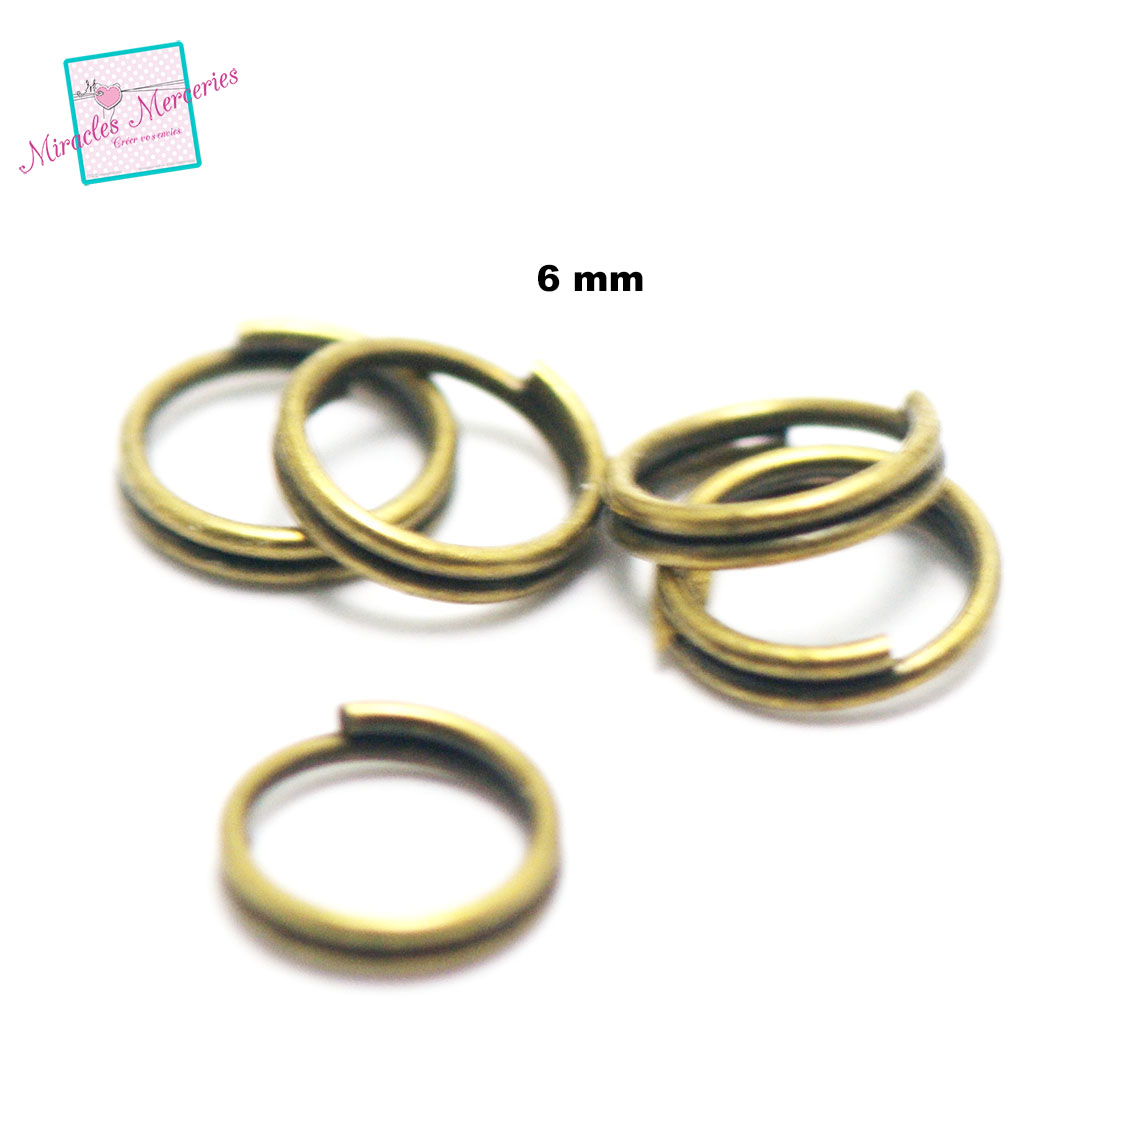 50 anneaux fermés doublés 6 mm, bronze